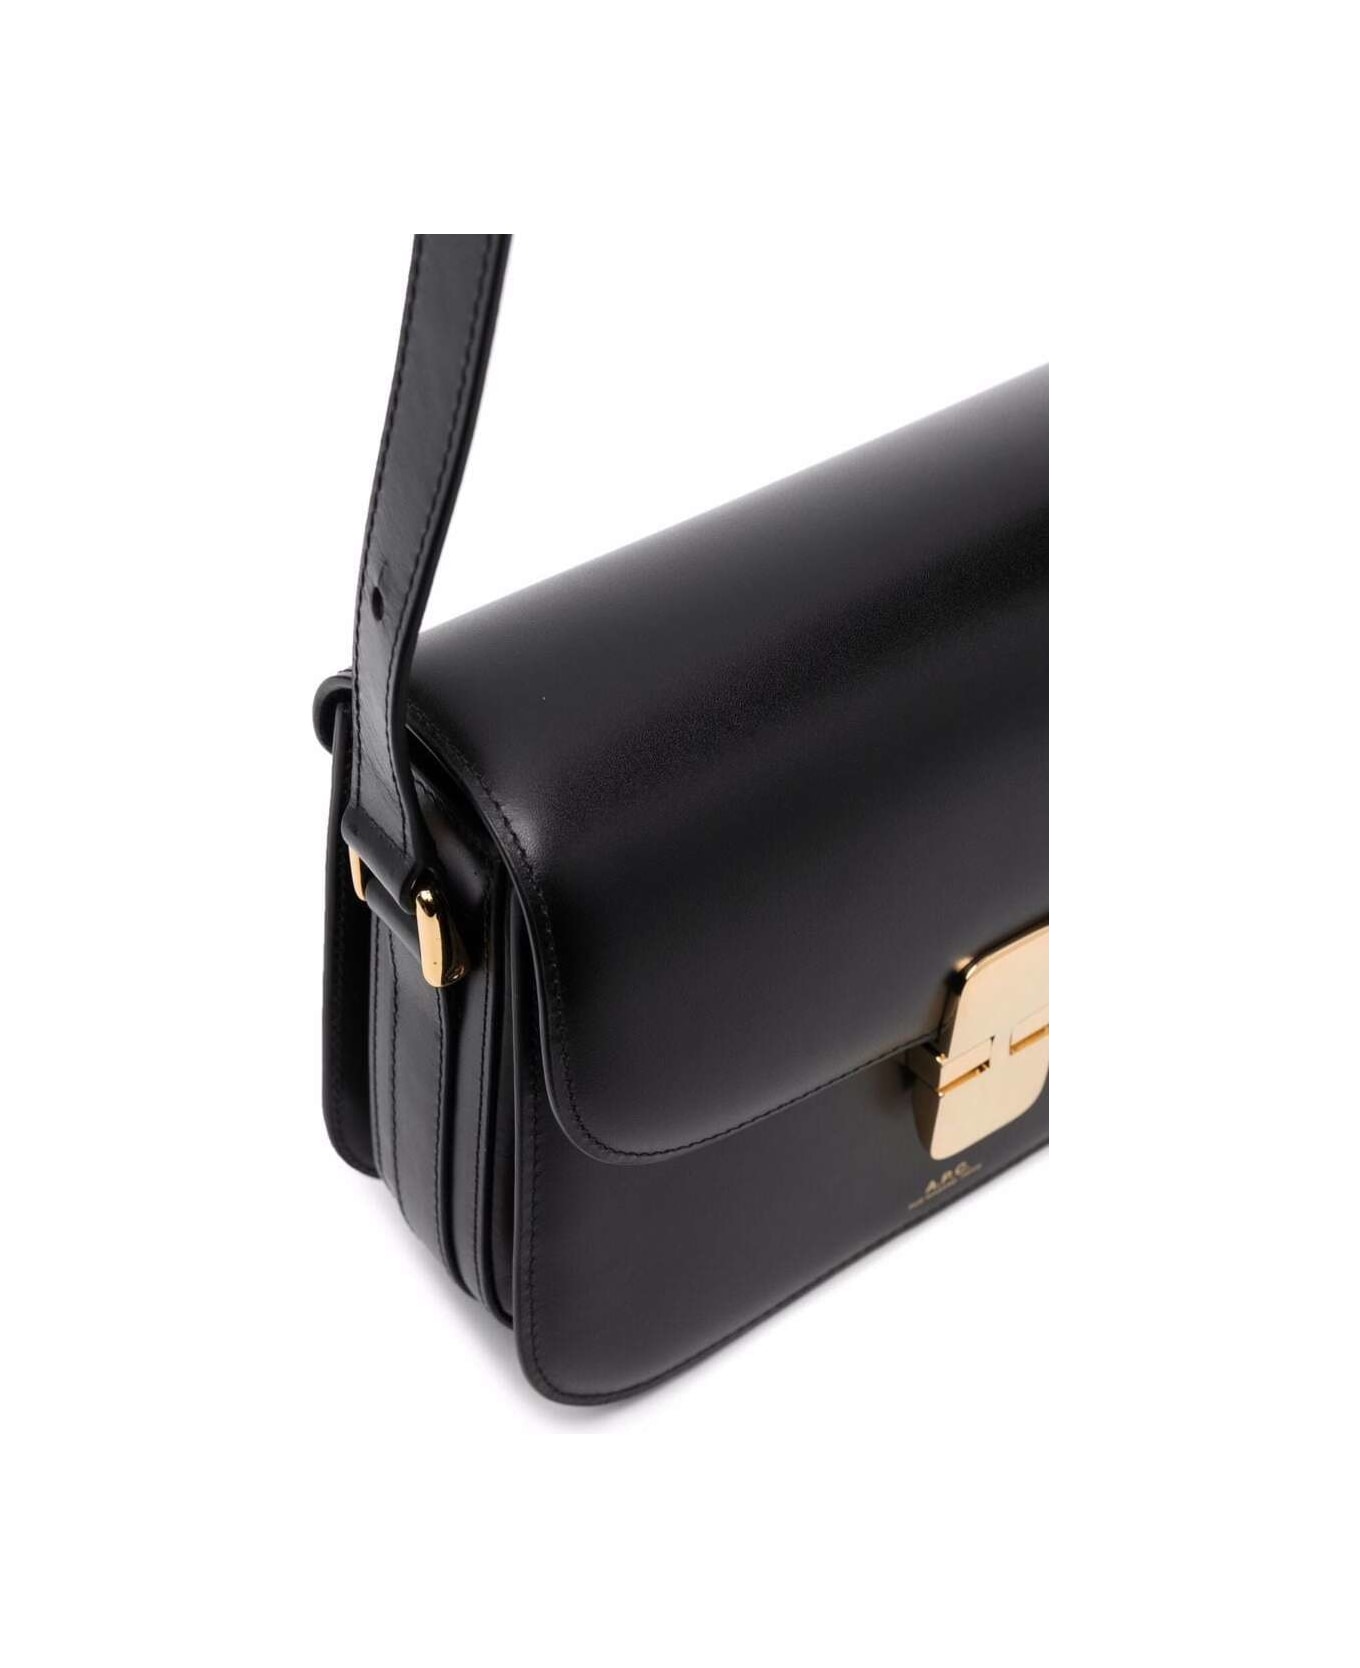 A.P.C. Black Bag In Genuine Leather With Gold Color Engraved Logo And Adjustable Shoulder Strap - Black